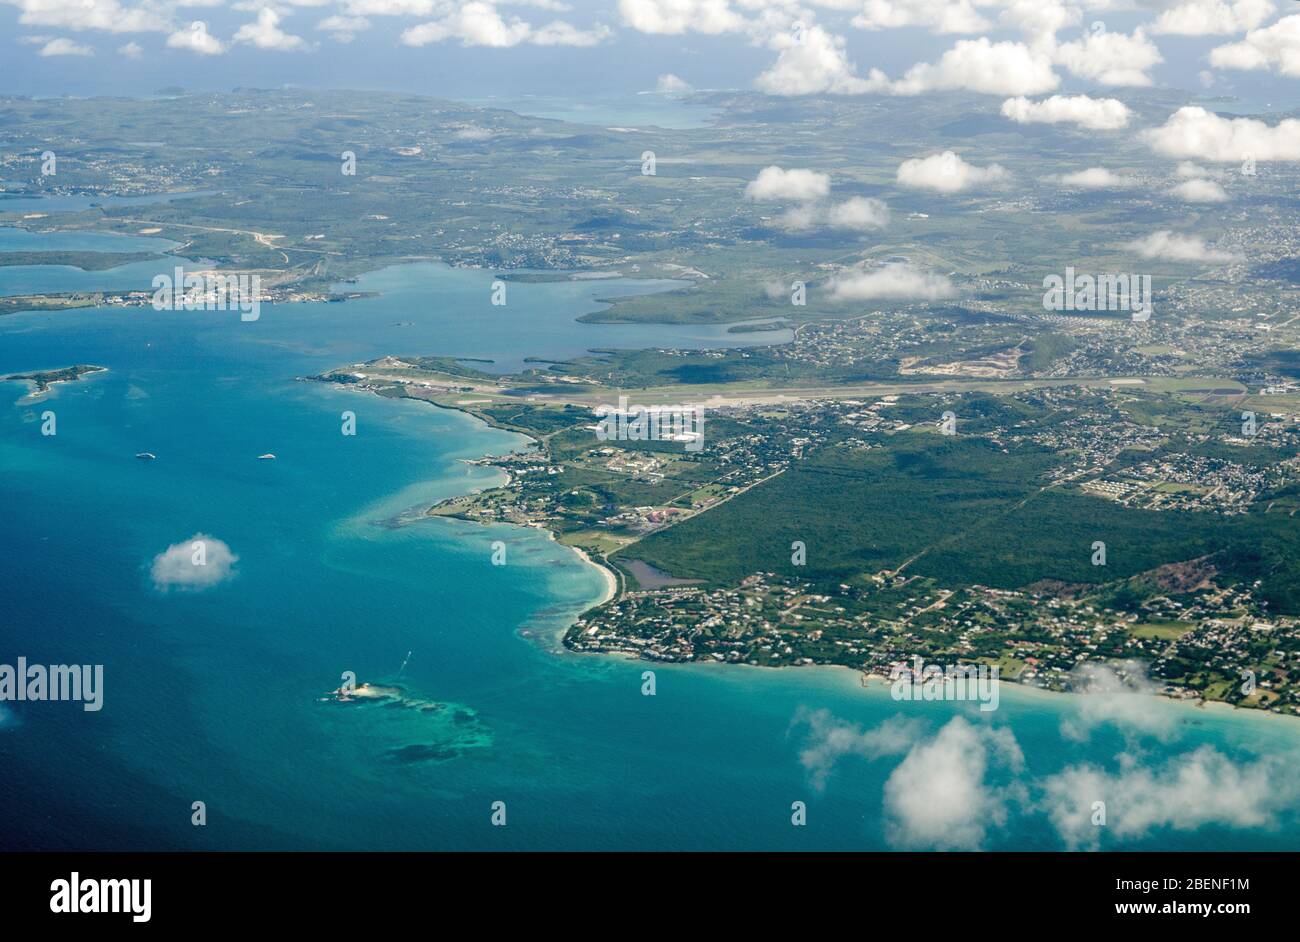 Vista aerea di V.C. Bird International Airport, Cedar Grove, Osborn, Judge's Bay e Judge's Hill sulla costa settentrionale di Antigua nei Caraibi. Foto Stock